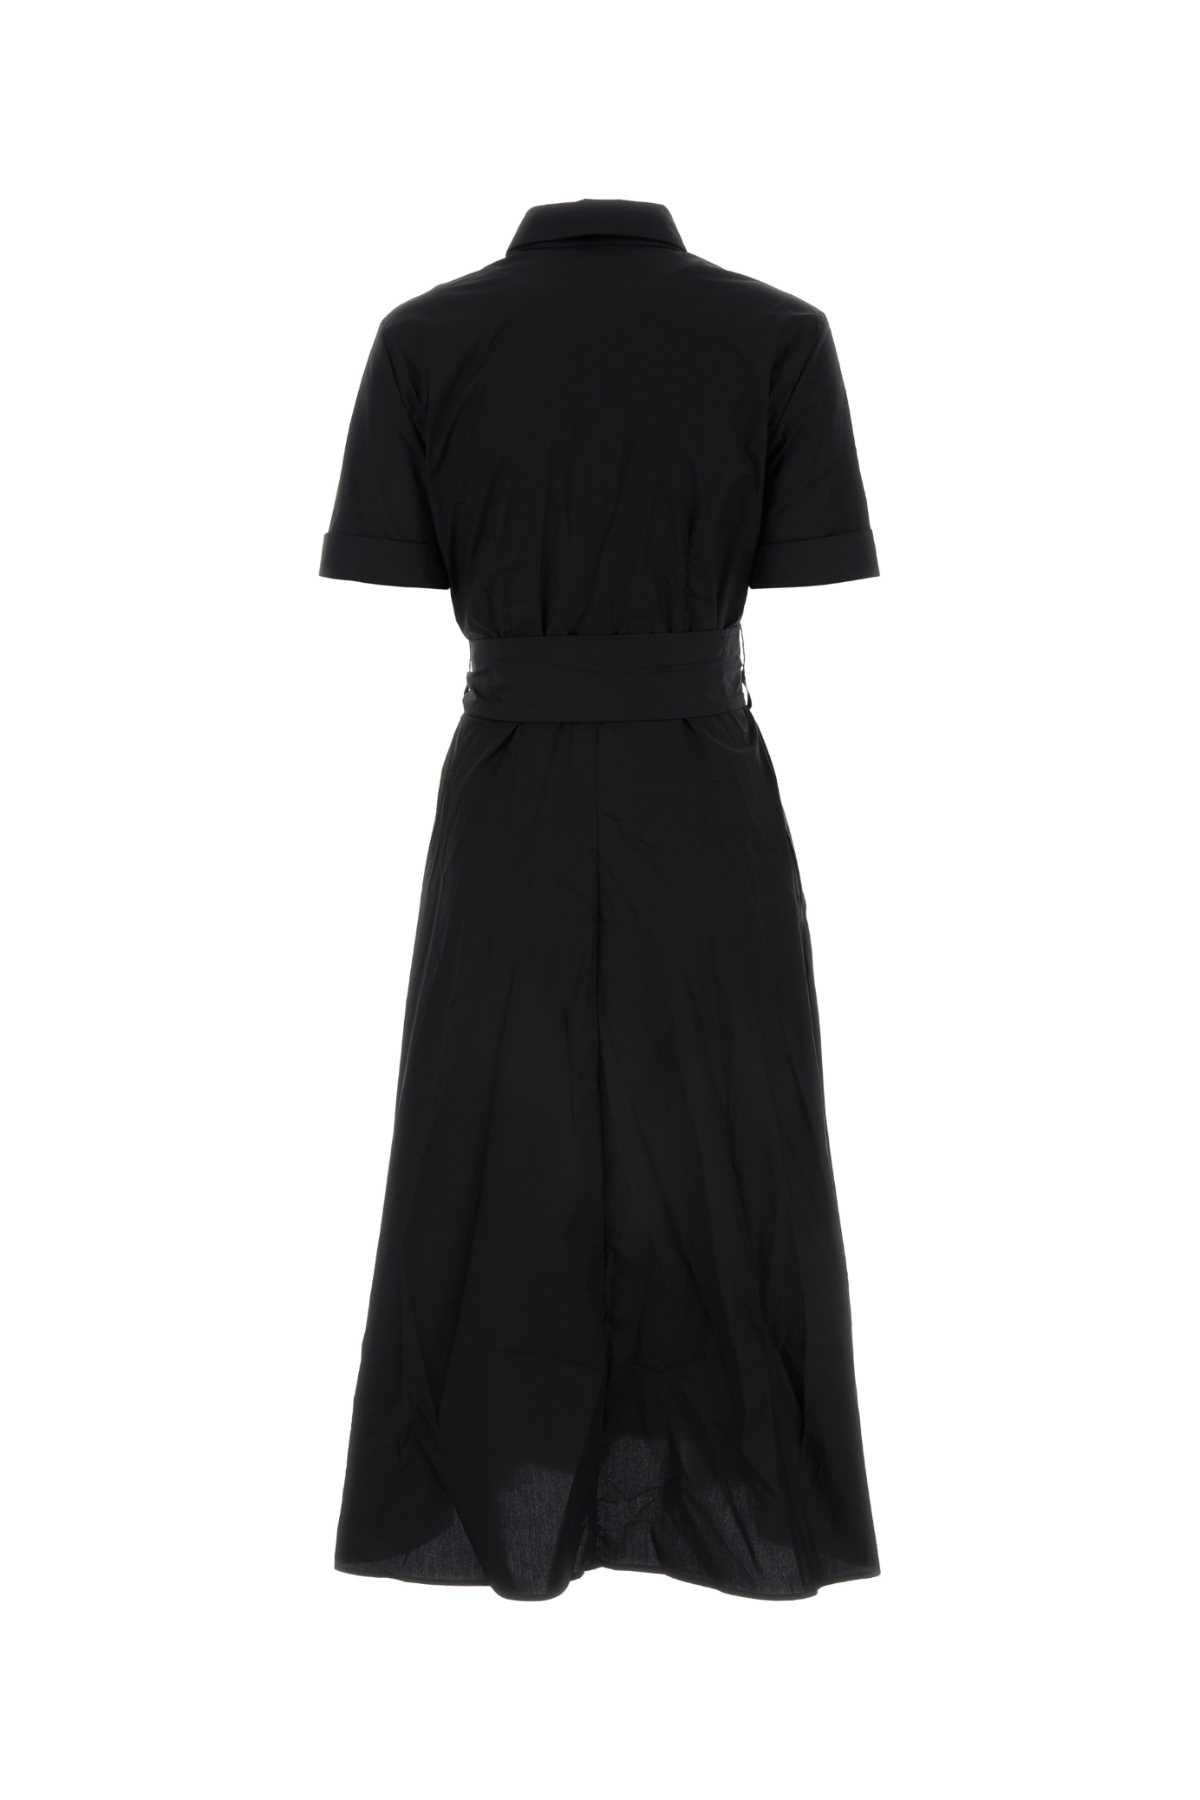 Shop Woolrich Black Cotton Shirt Dress